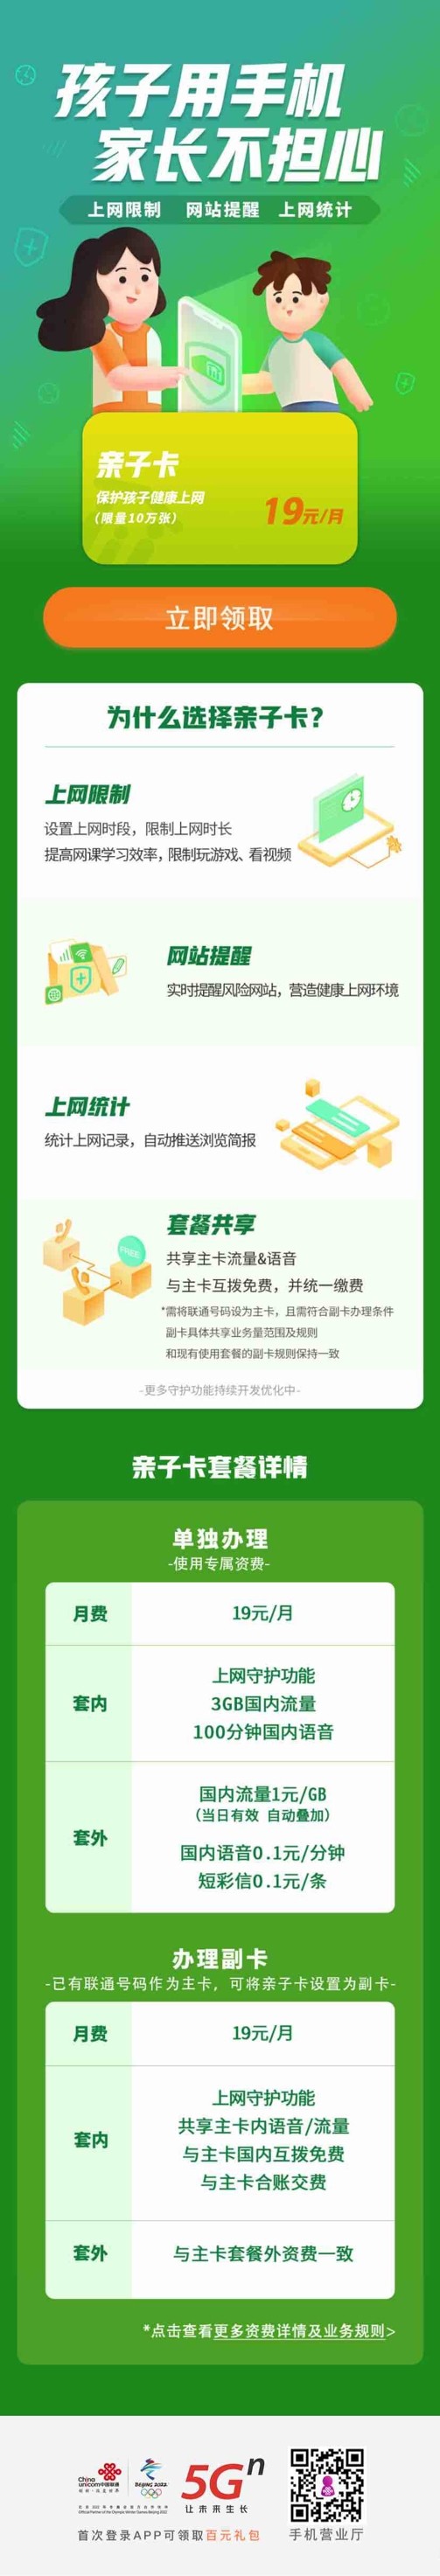 中国联通发布“亲子卡”，3GB流量+100分钟语音